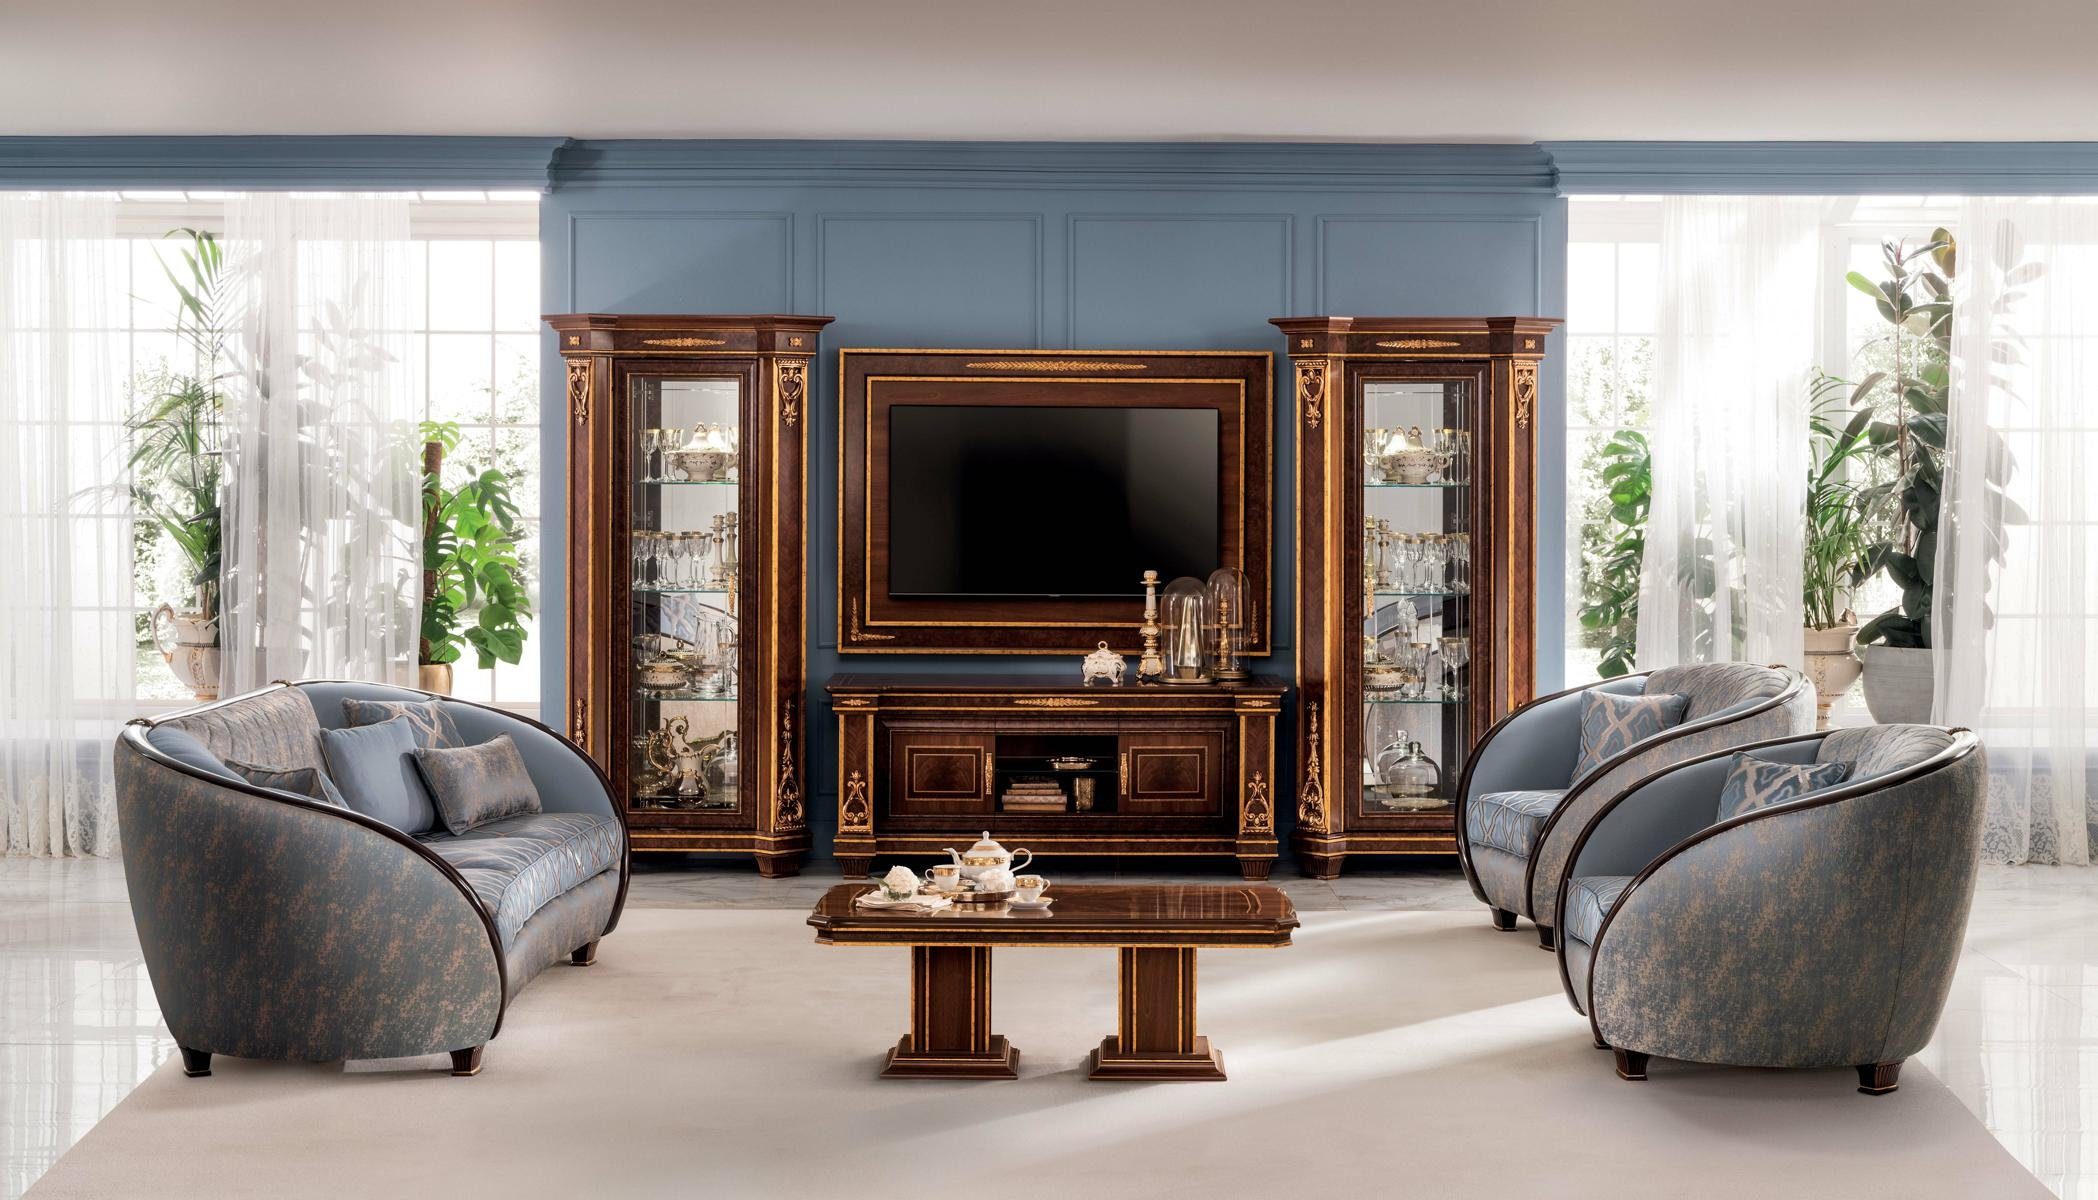 JVmoebel Wohnzimmer-Set, Luxus Sofagarnitur Klasse 3+2 Italienische Möbel Couch Sofa arredoclassic™ Neu